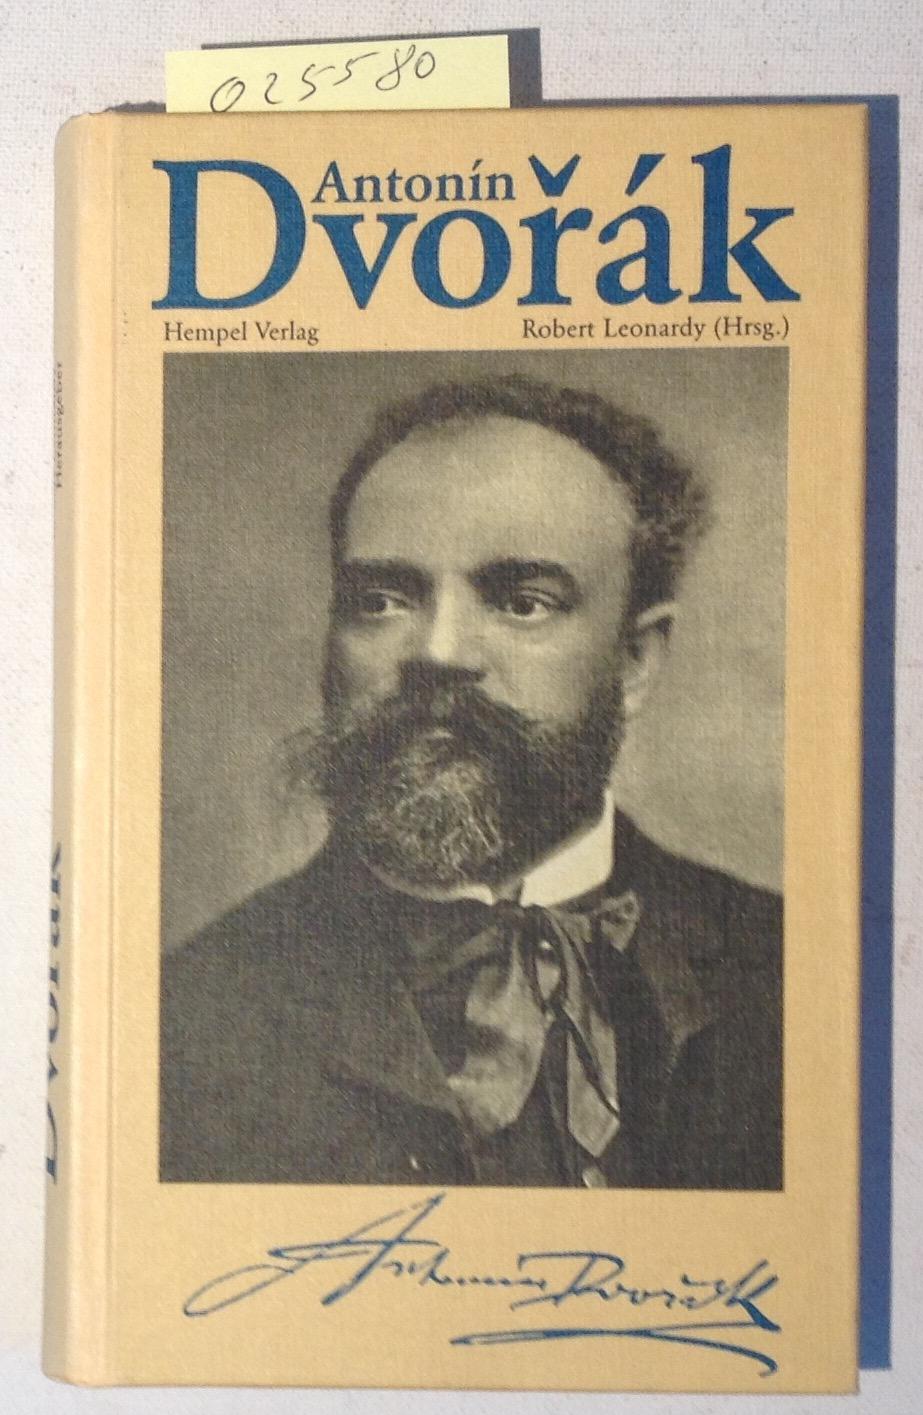 Antonin Dvorak: Konzertfuhrer der Musikfestspiele Saar 1991 aus Anlass des 150. Geburtstages des Komponisten (Edition Karlsberg)